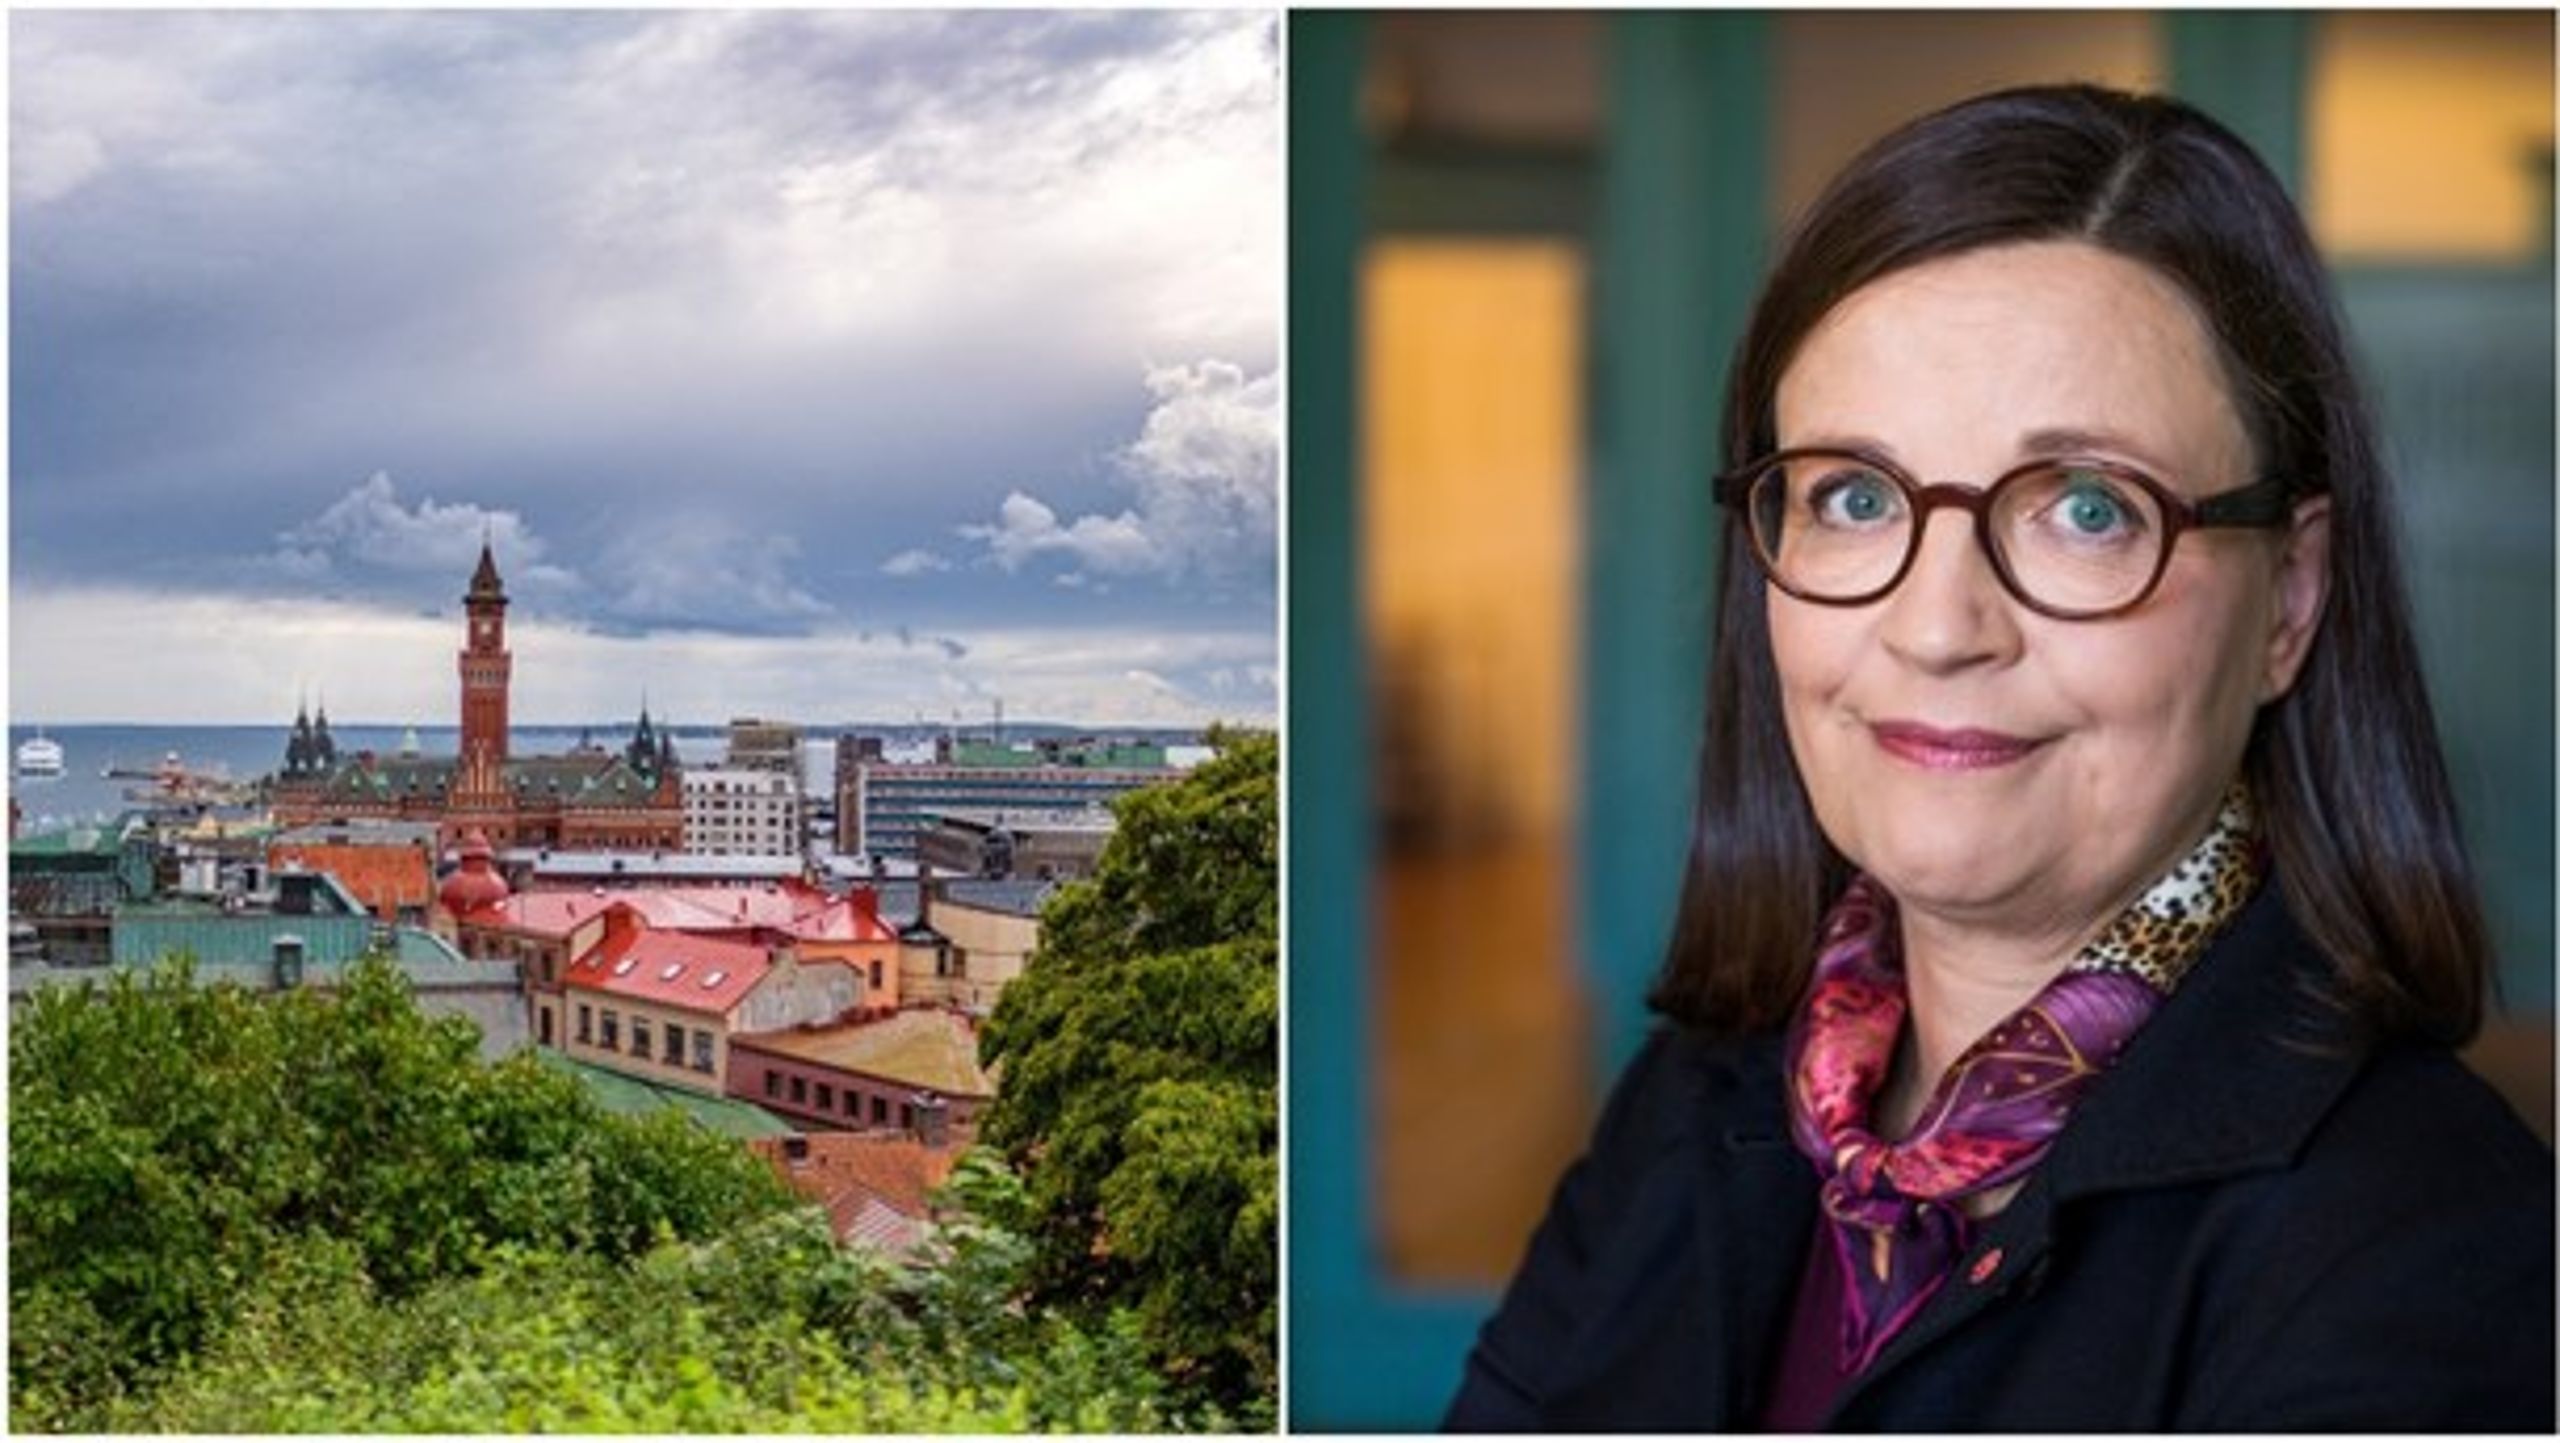 Folkomröstning om energibolag i Helsingborg. Inte lätt för utbildningsminister Anna Ekström (S) att förbjuda nya religiösa friskolor, enligt utredare.